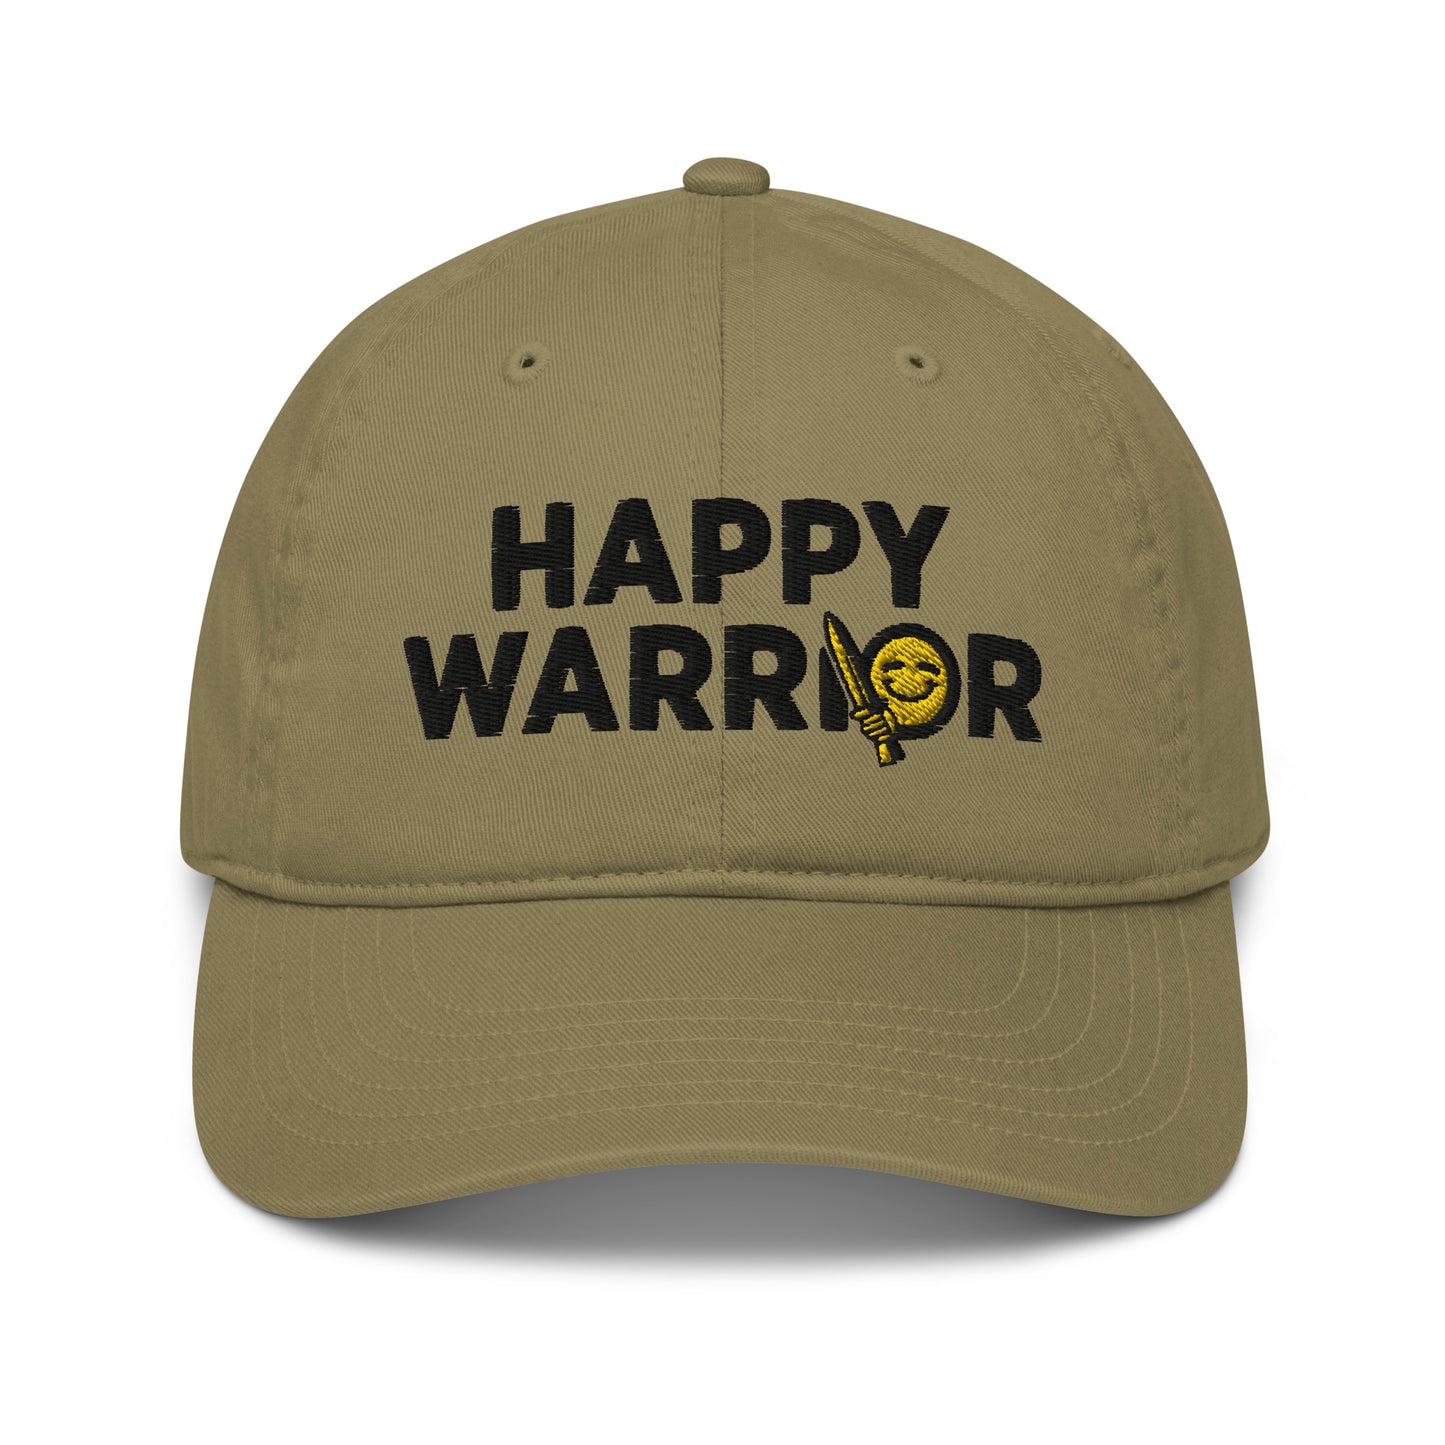 Happy Warrior dad hat